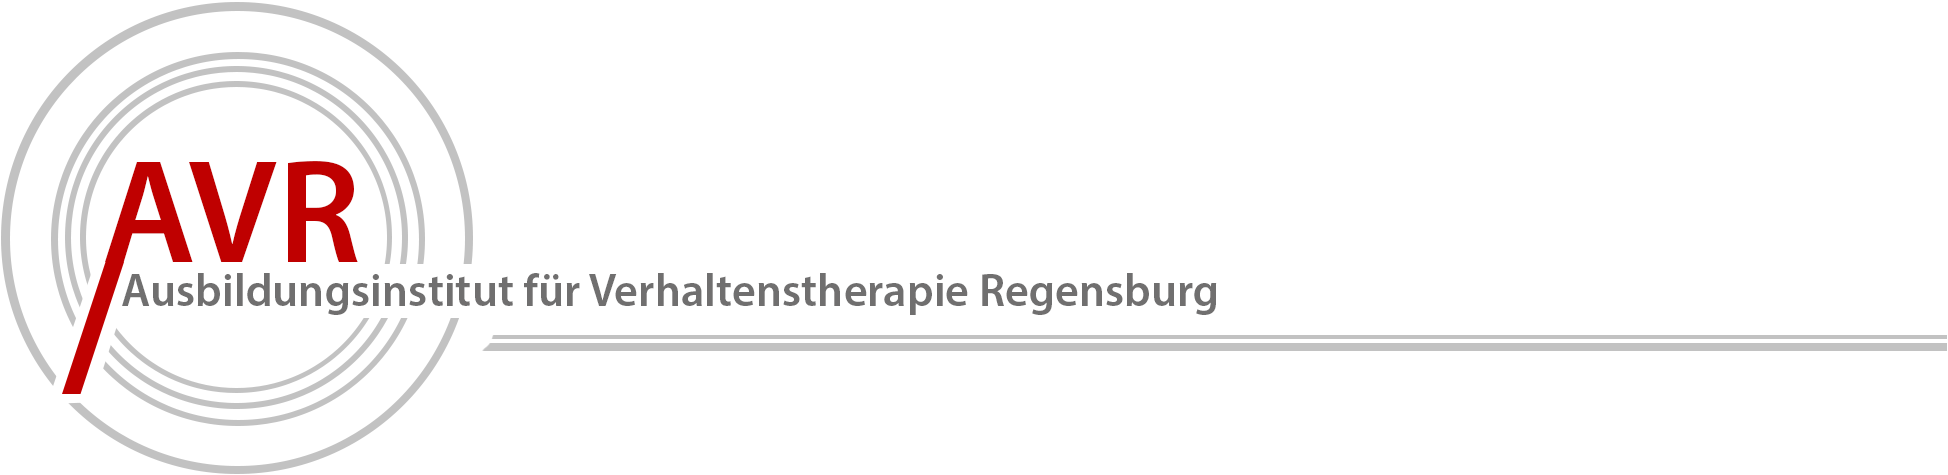 Ausbildungsinstitut für Psychotherapie/Verhaltenstherapie in Regensburg, staatlich anerkannt seit 2004